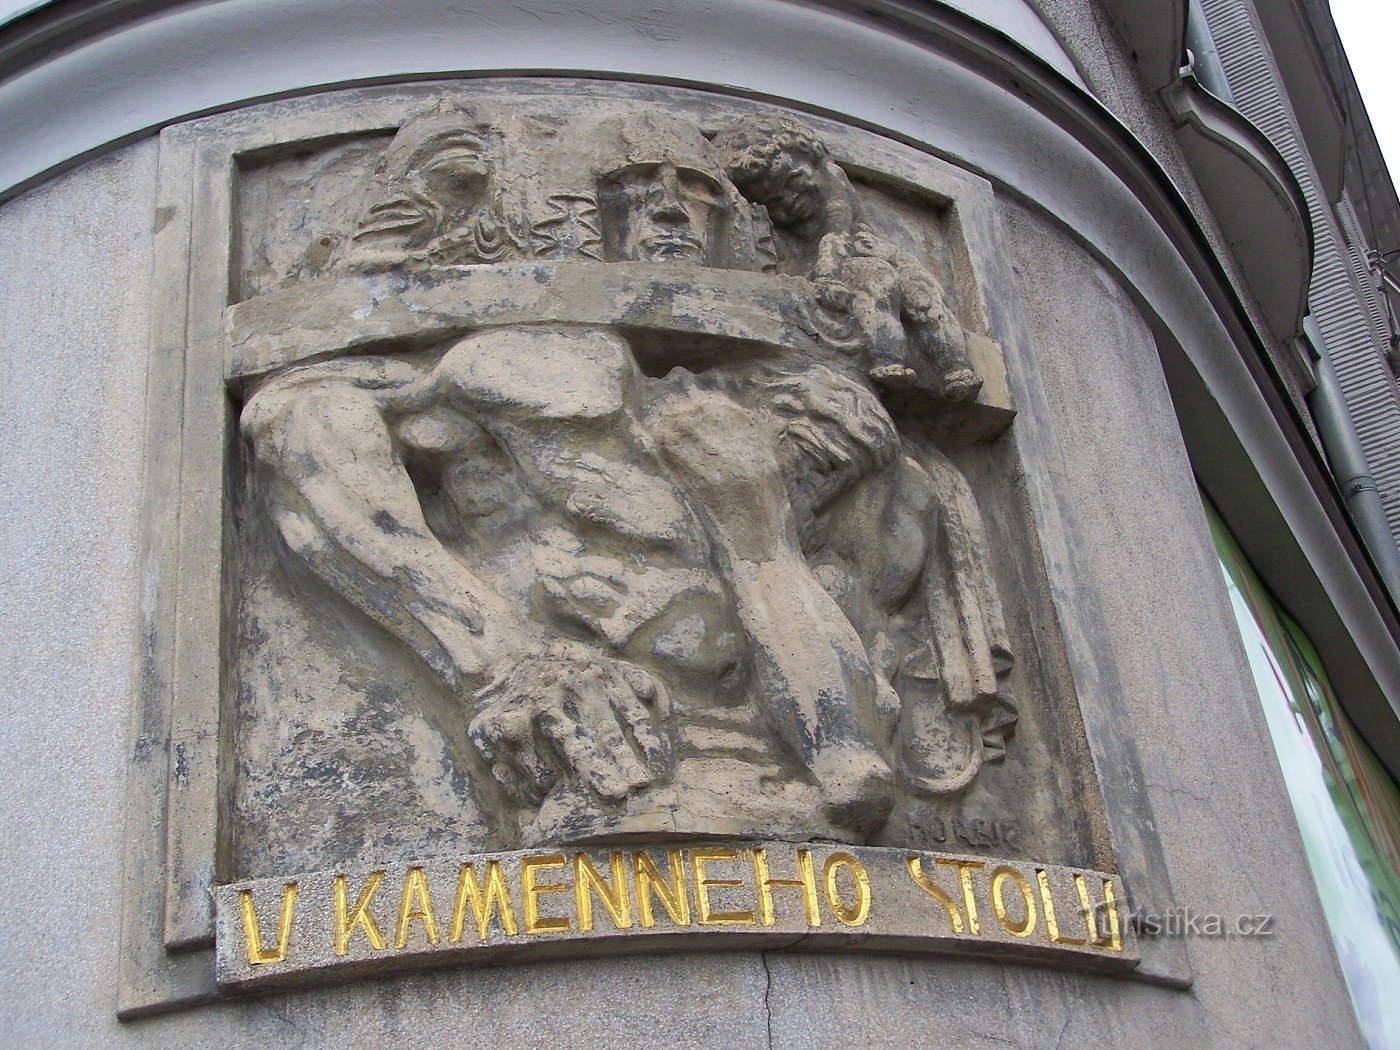 Praga - Karlovo nám. 35, Ječná 1 - Casa vicino al tavolo di pietra